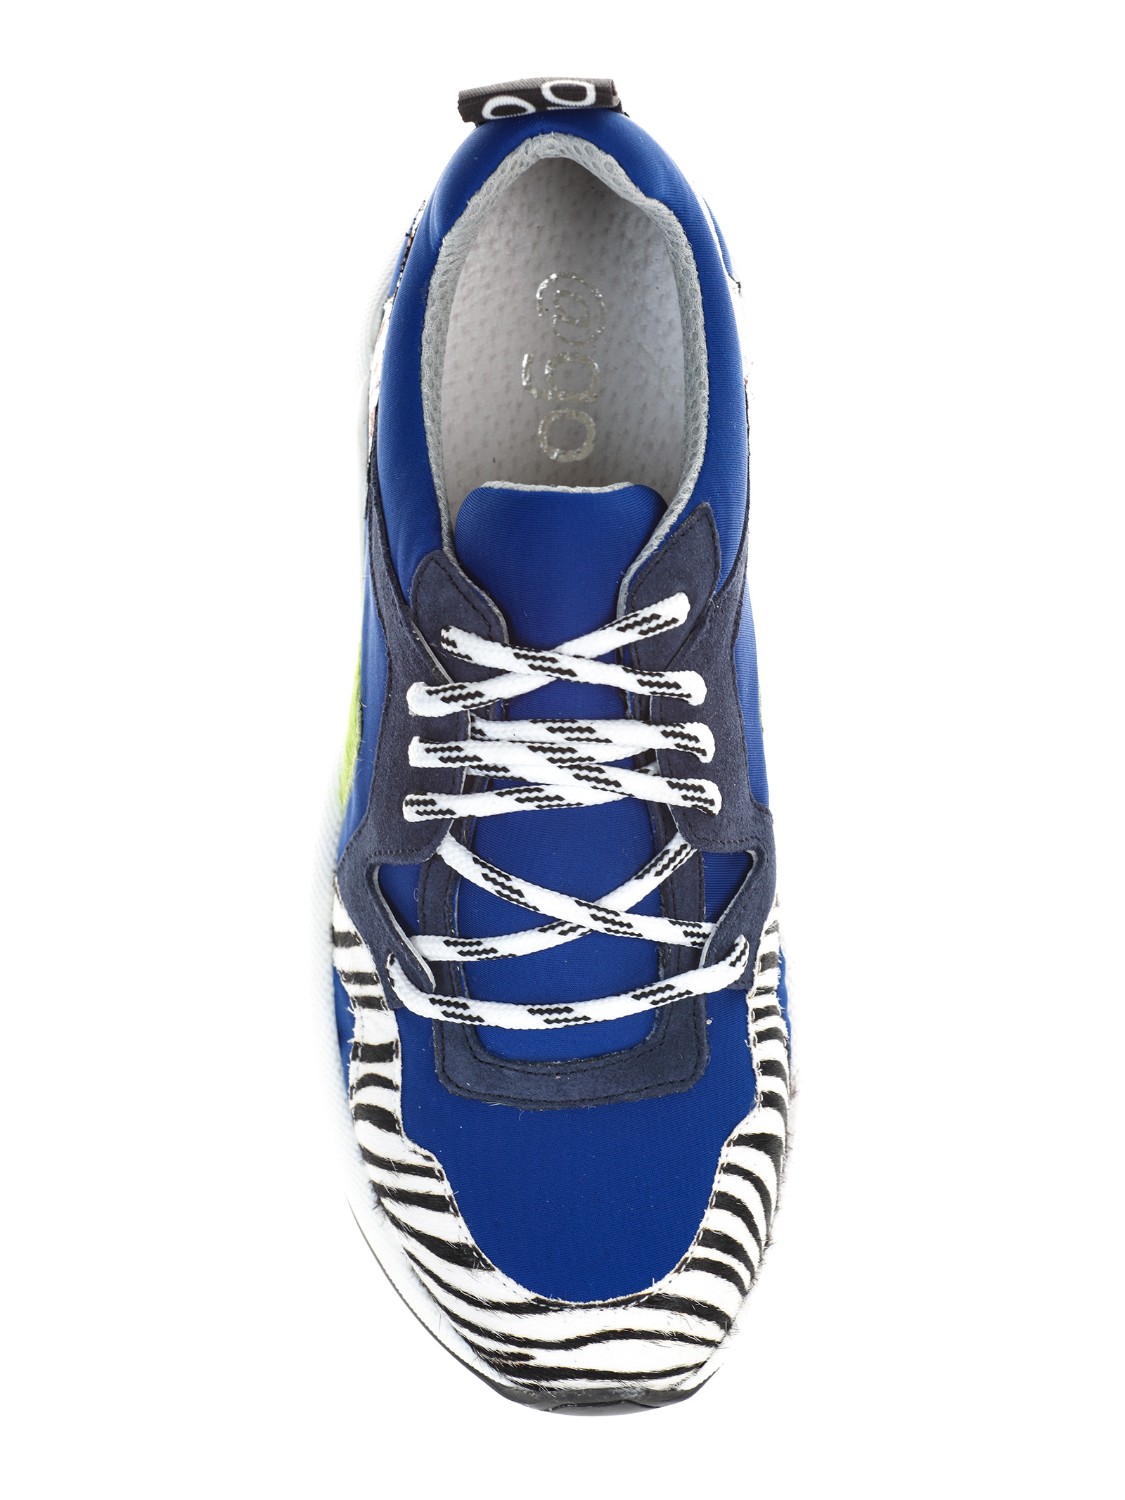 shop MELINE  Scarpa: Meline sneakers in pelle stampa zebra.
Tomaia in pelle.
Suola in gomma.
Allacciatura con lacci.
Colore blu-verde-zebrato.
Made in Italy.. MI1101-BIA/FUM number 973186